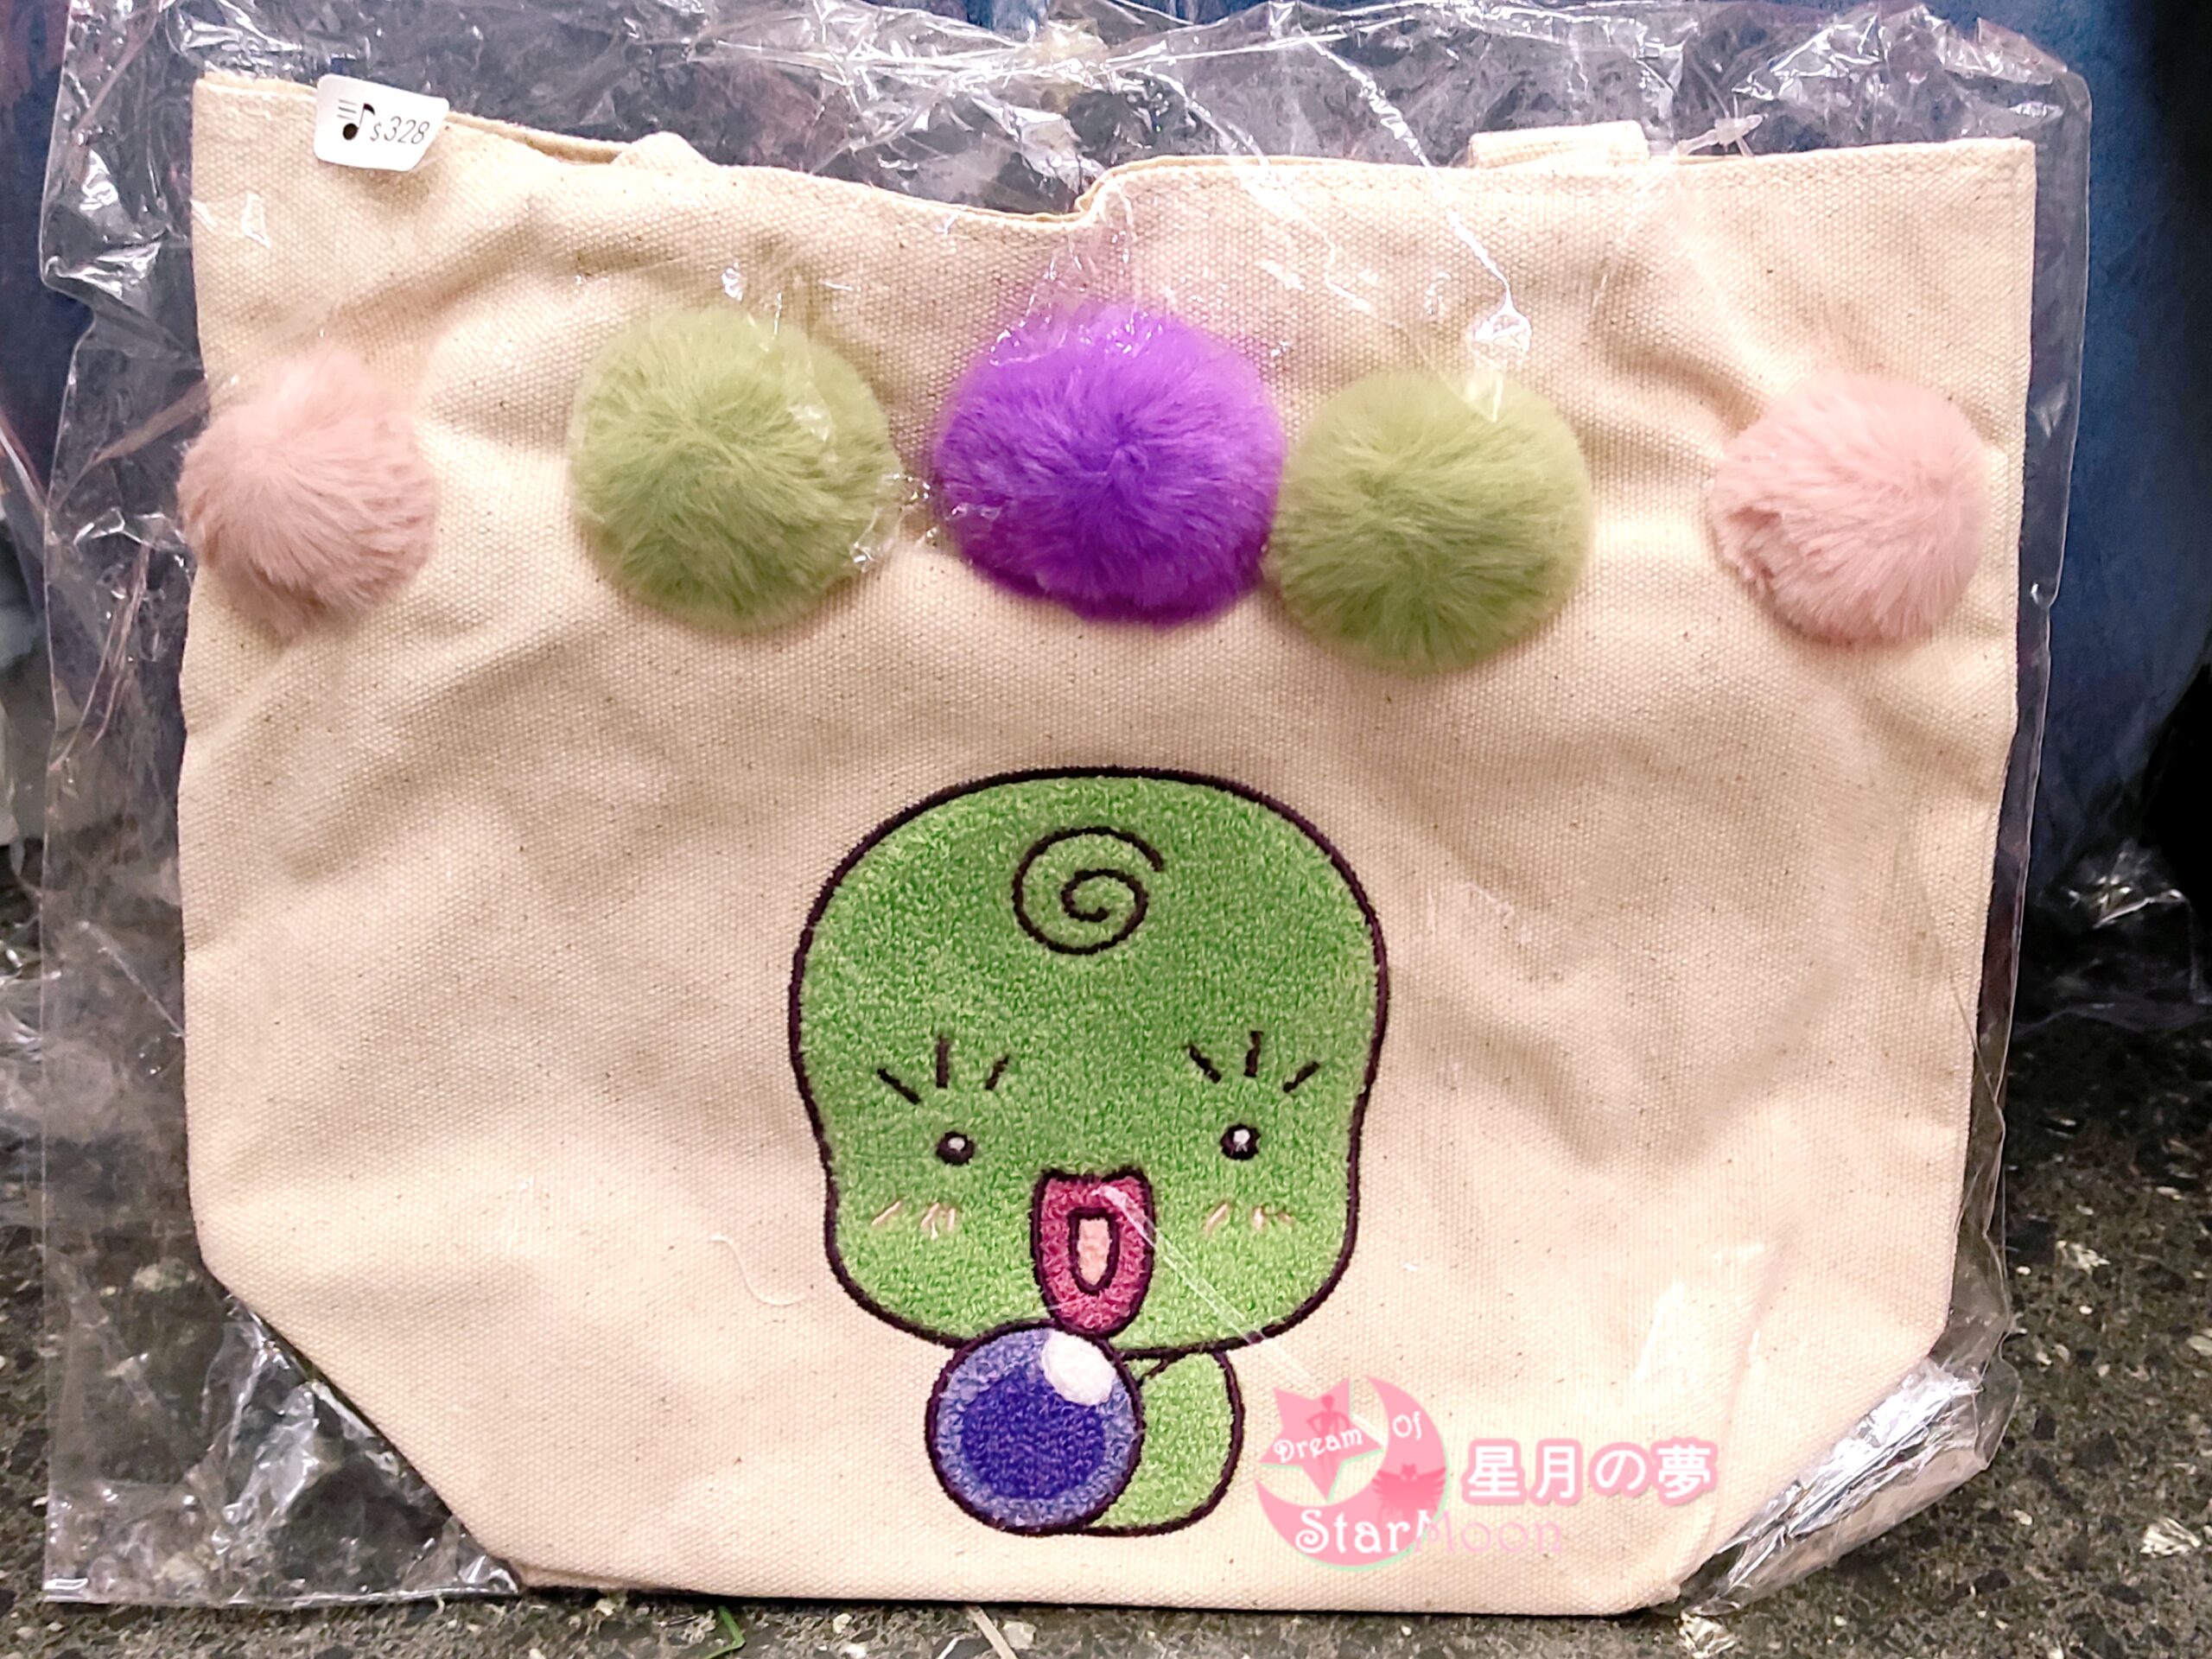 【現貨新品】小魔女DoReMi – 台灣限定毛毛球刺繡魔女莉卡午餐手提袋